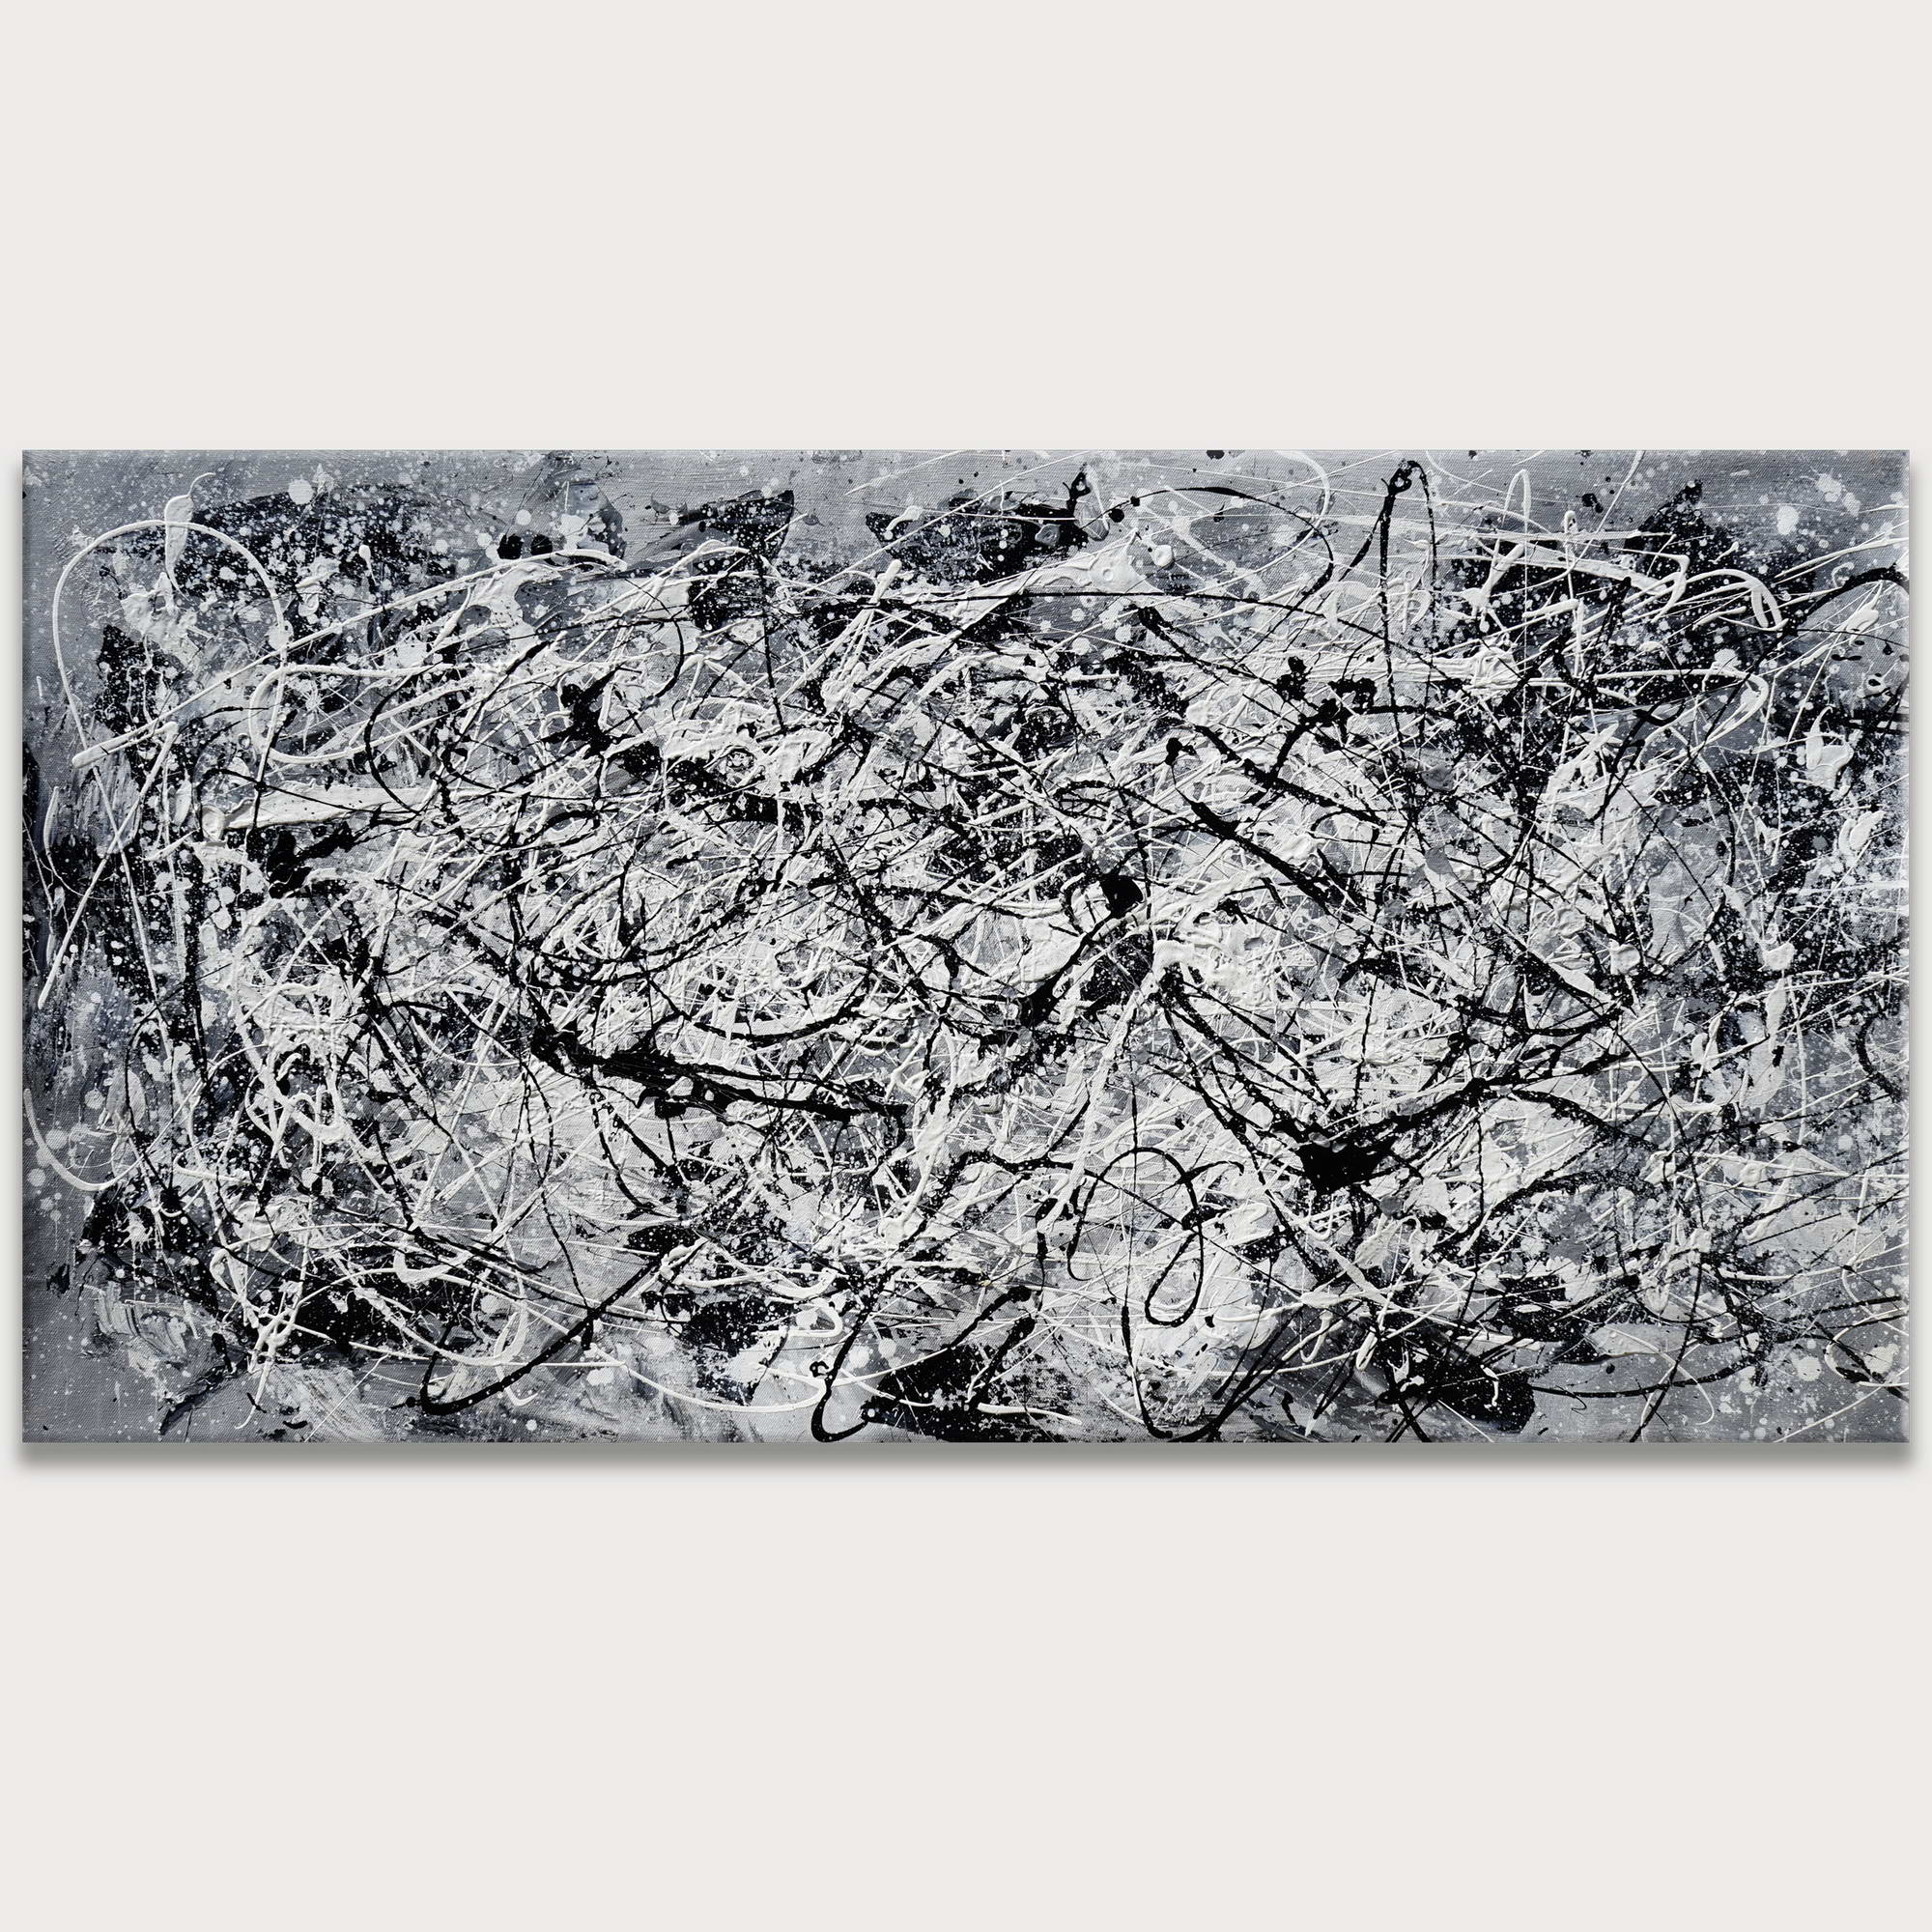 Dipinto a mano Astratto Bianco e Nero stile Pollock 75x150cm